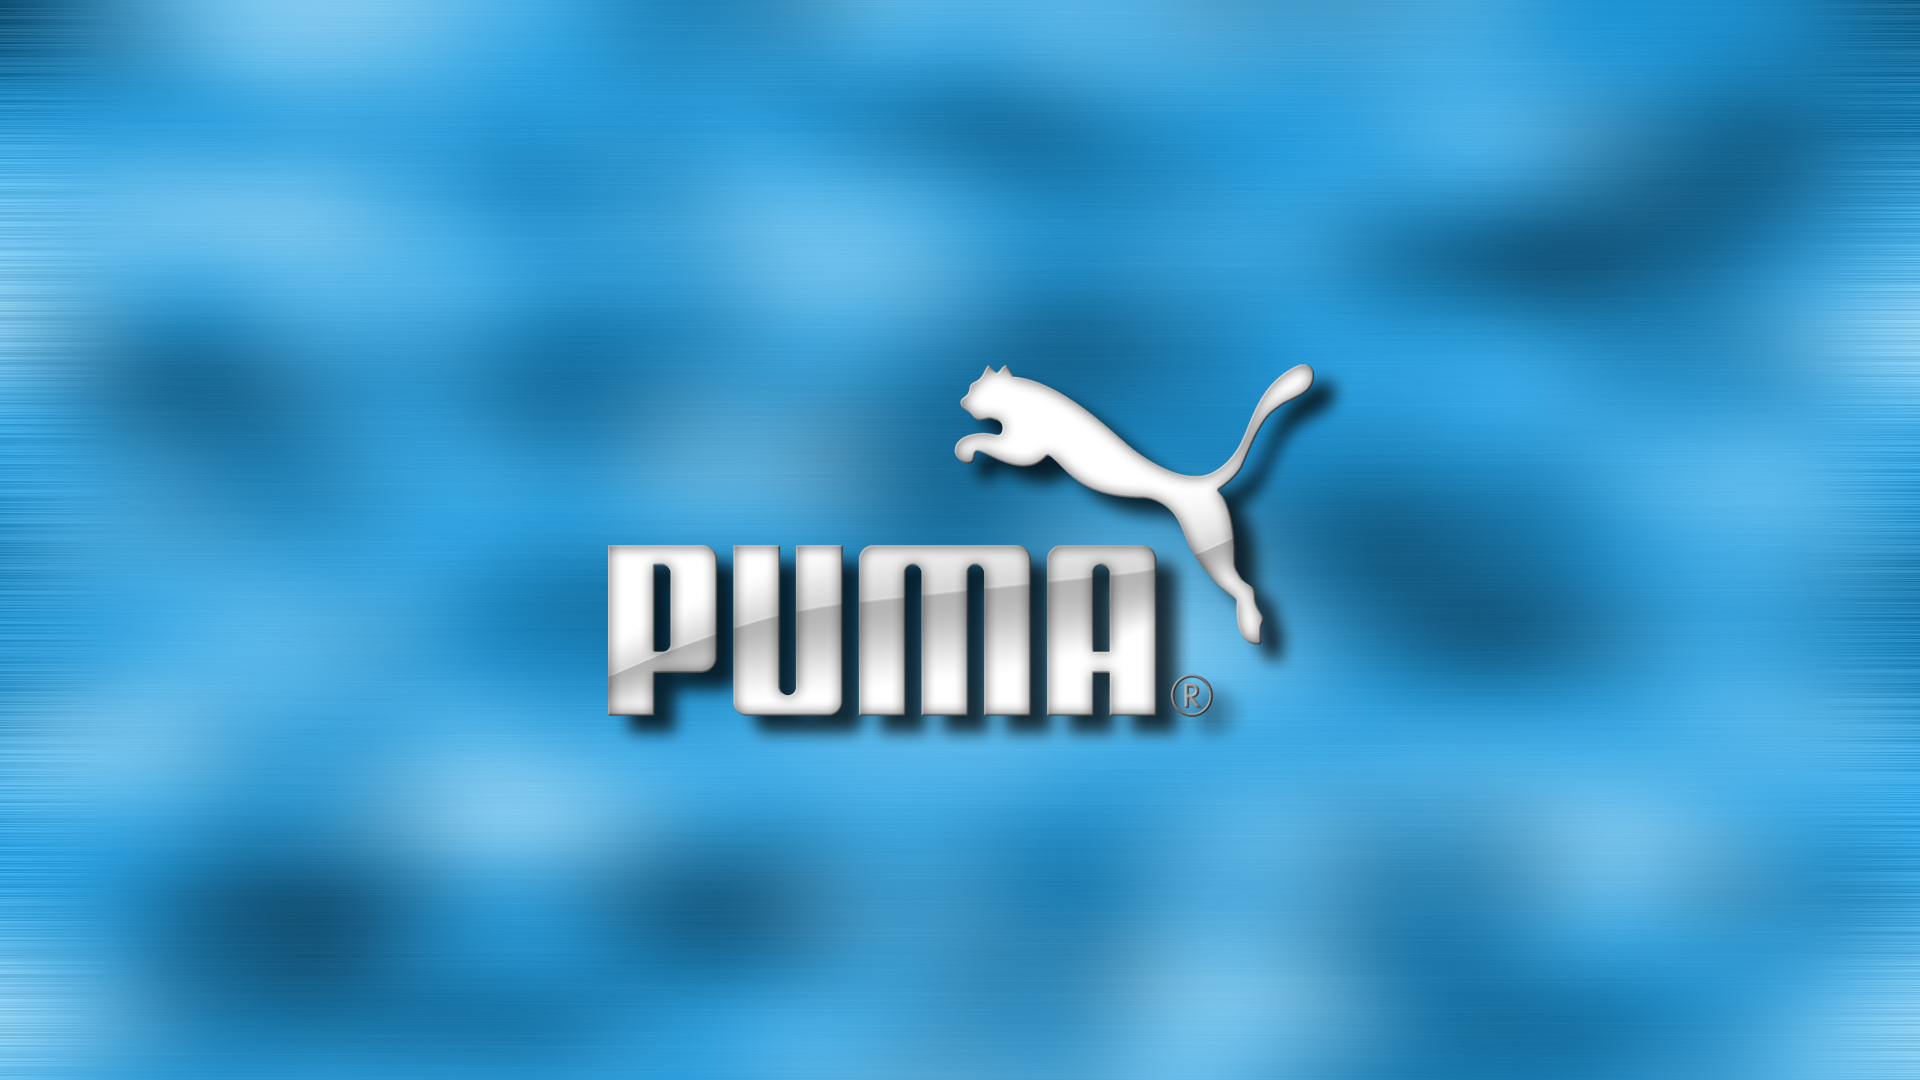 Puma Wallpaper by tinhoo on